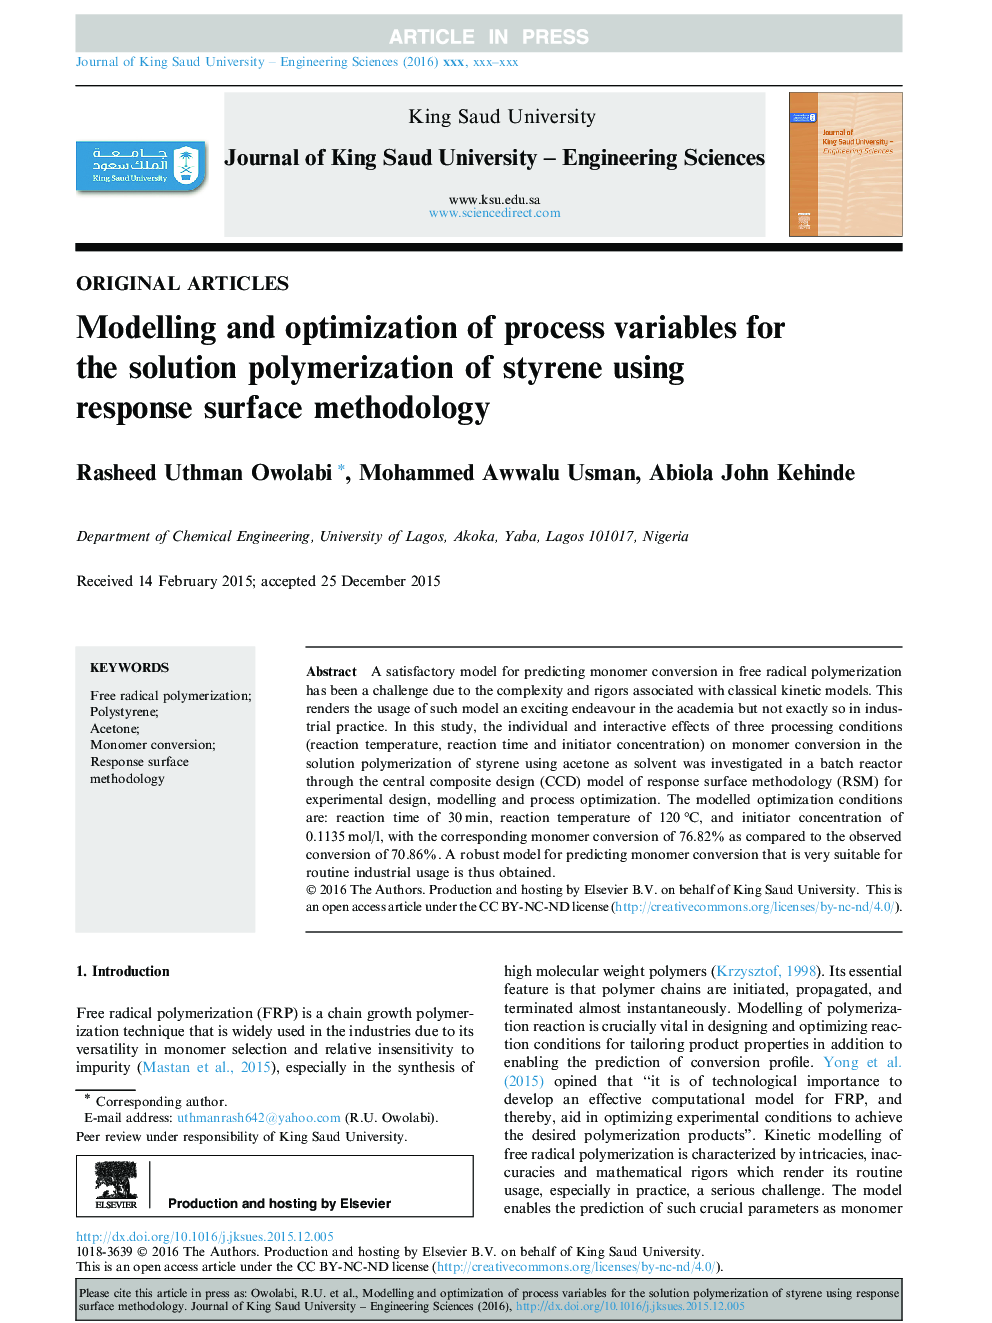 مدلسازی و بهینه سازی متغیرهای فرآیند برای پلیمریزاسیون محلول استایرن با استفاده از روش سطح پاسخ 